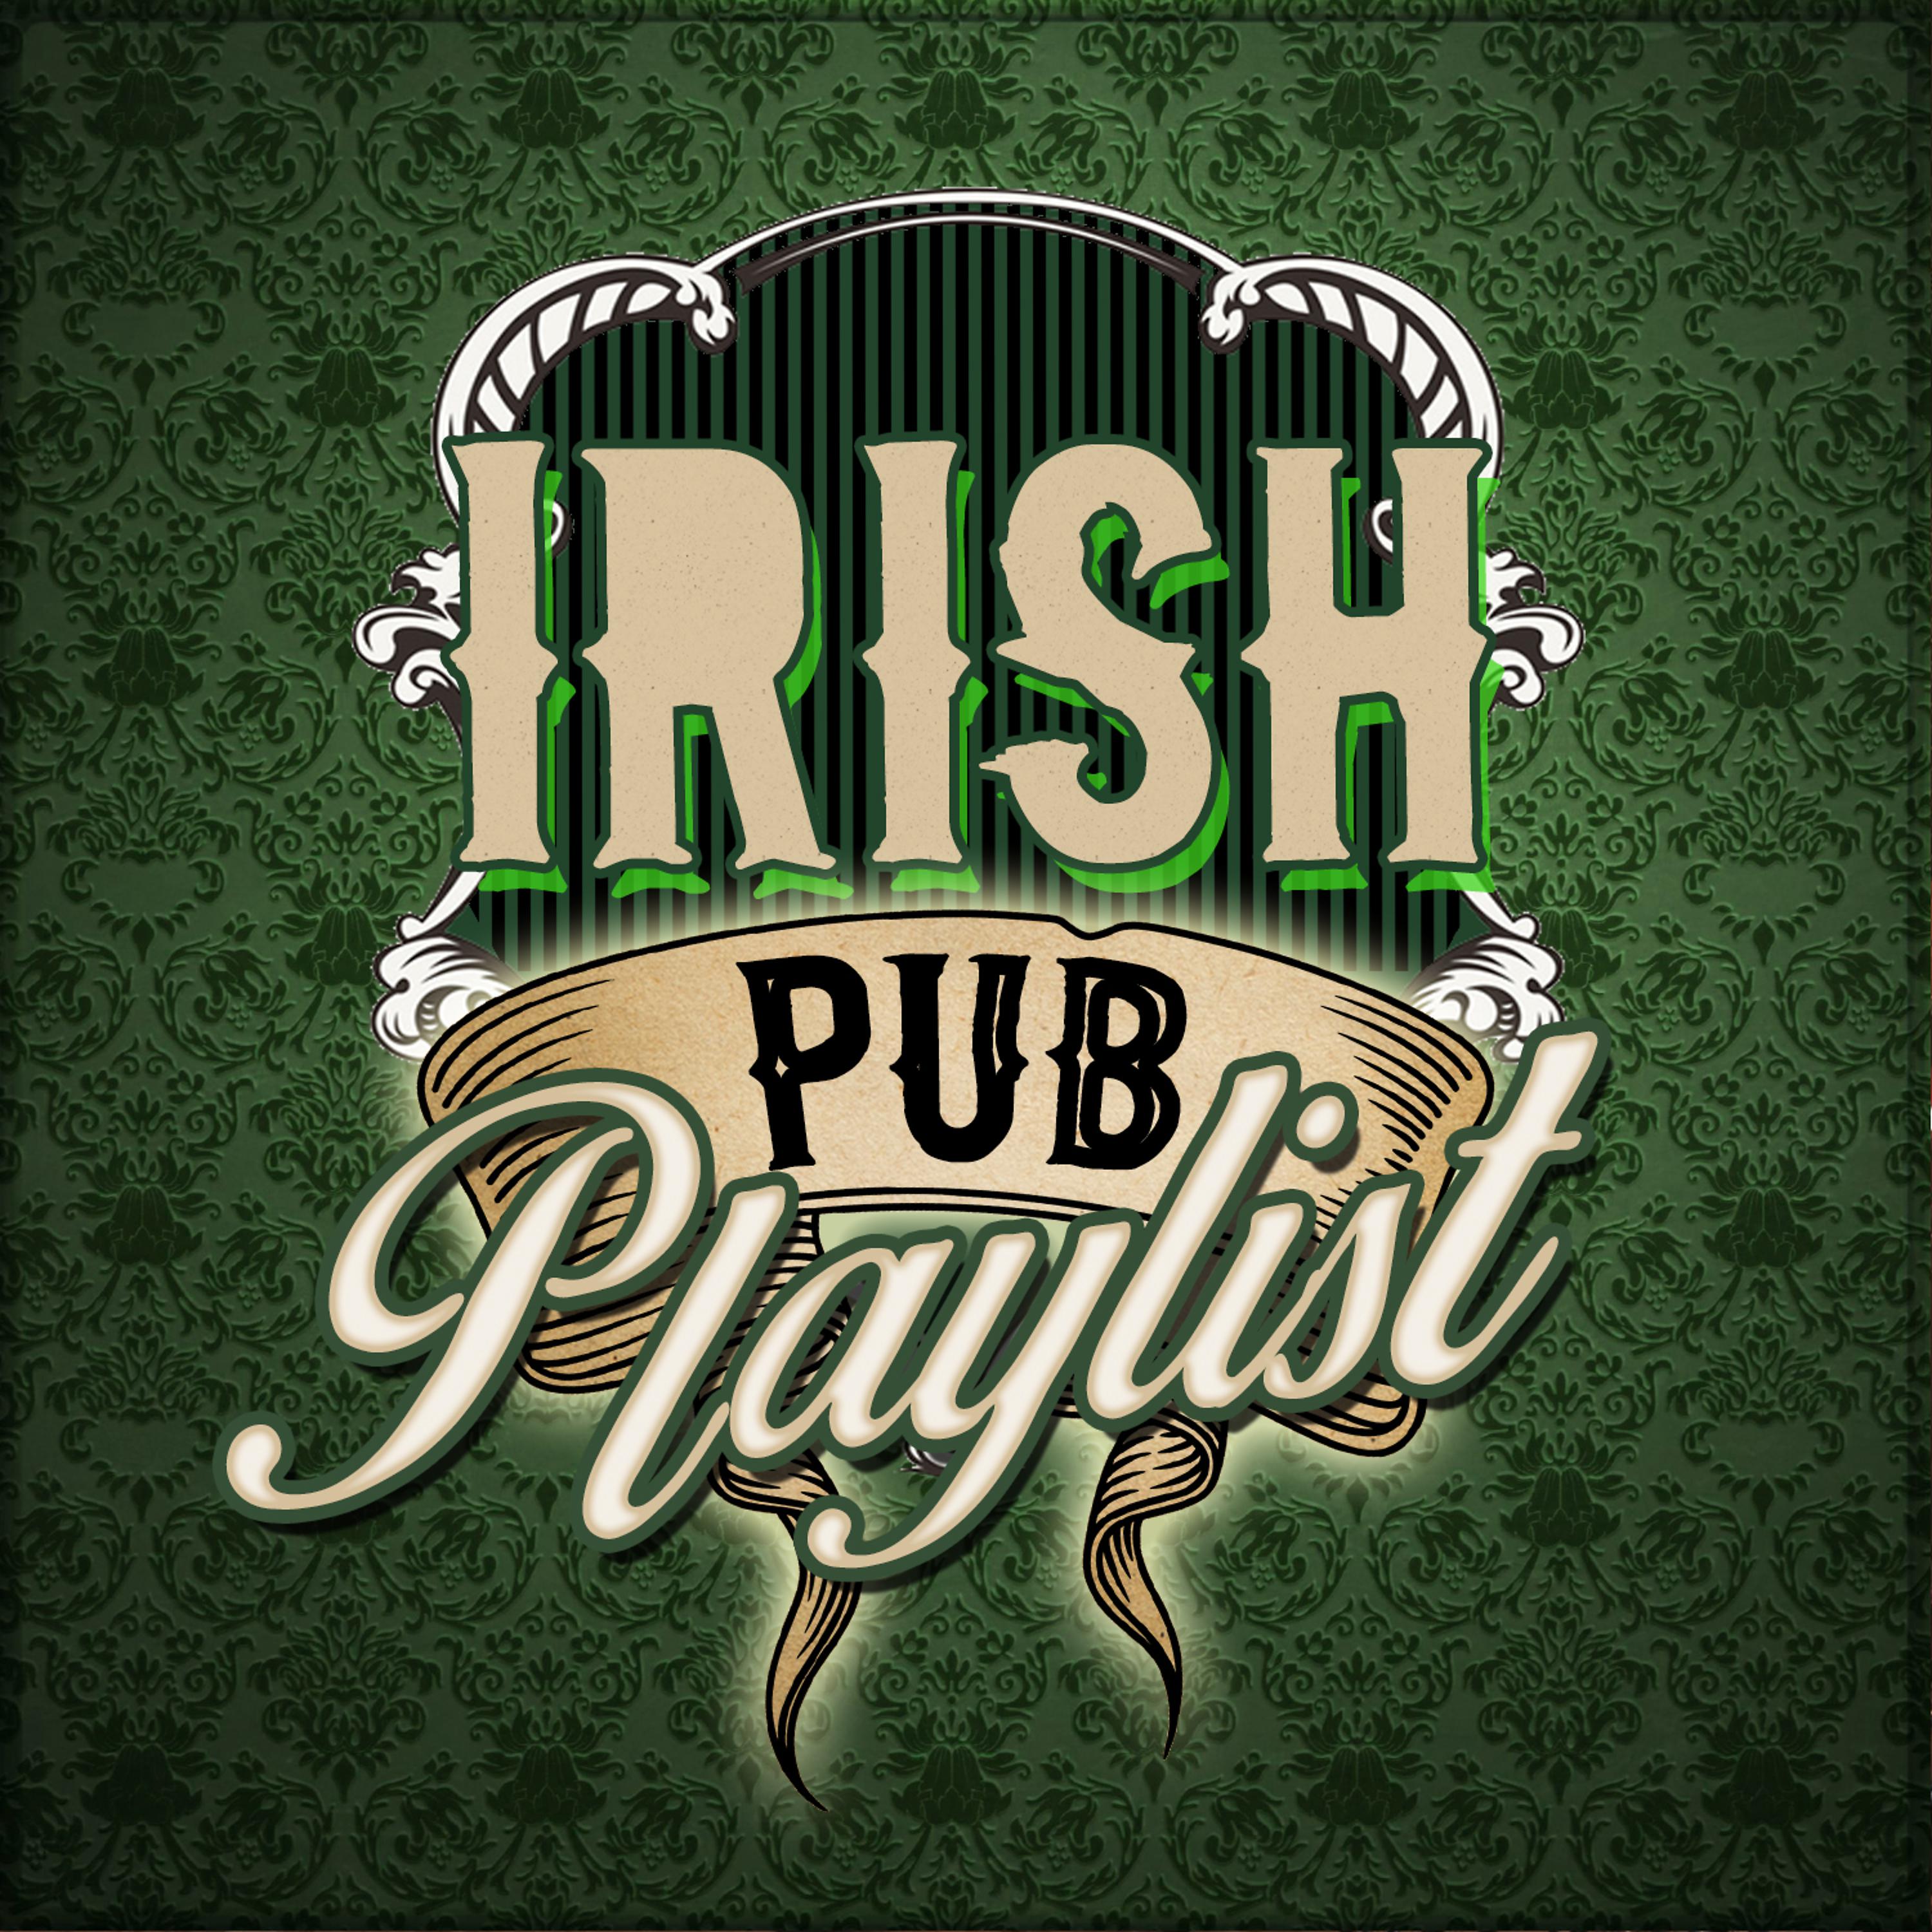 Great irish. The Irish pub. Irish & Celtic pub. Irish pub St Patrick. Ирландский паб песня.